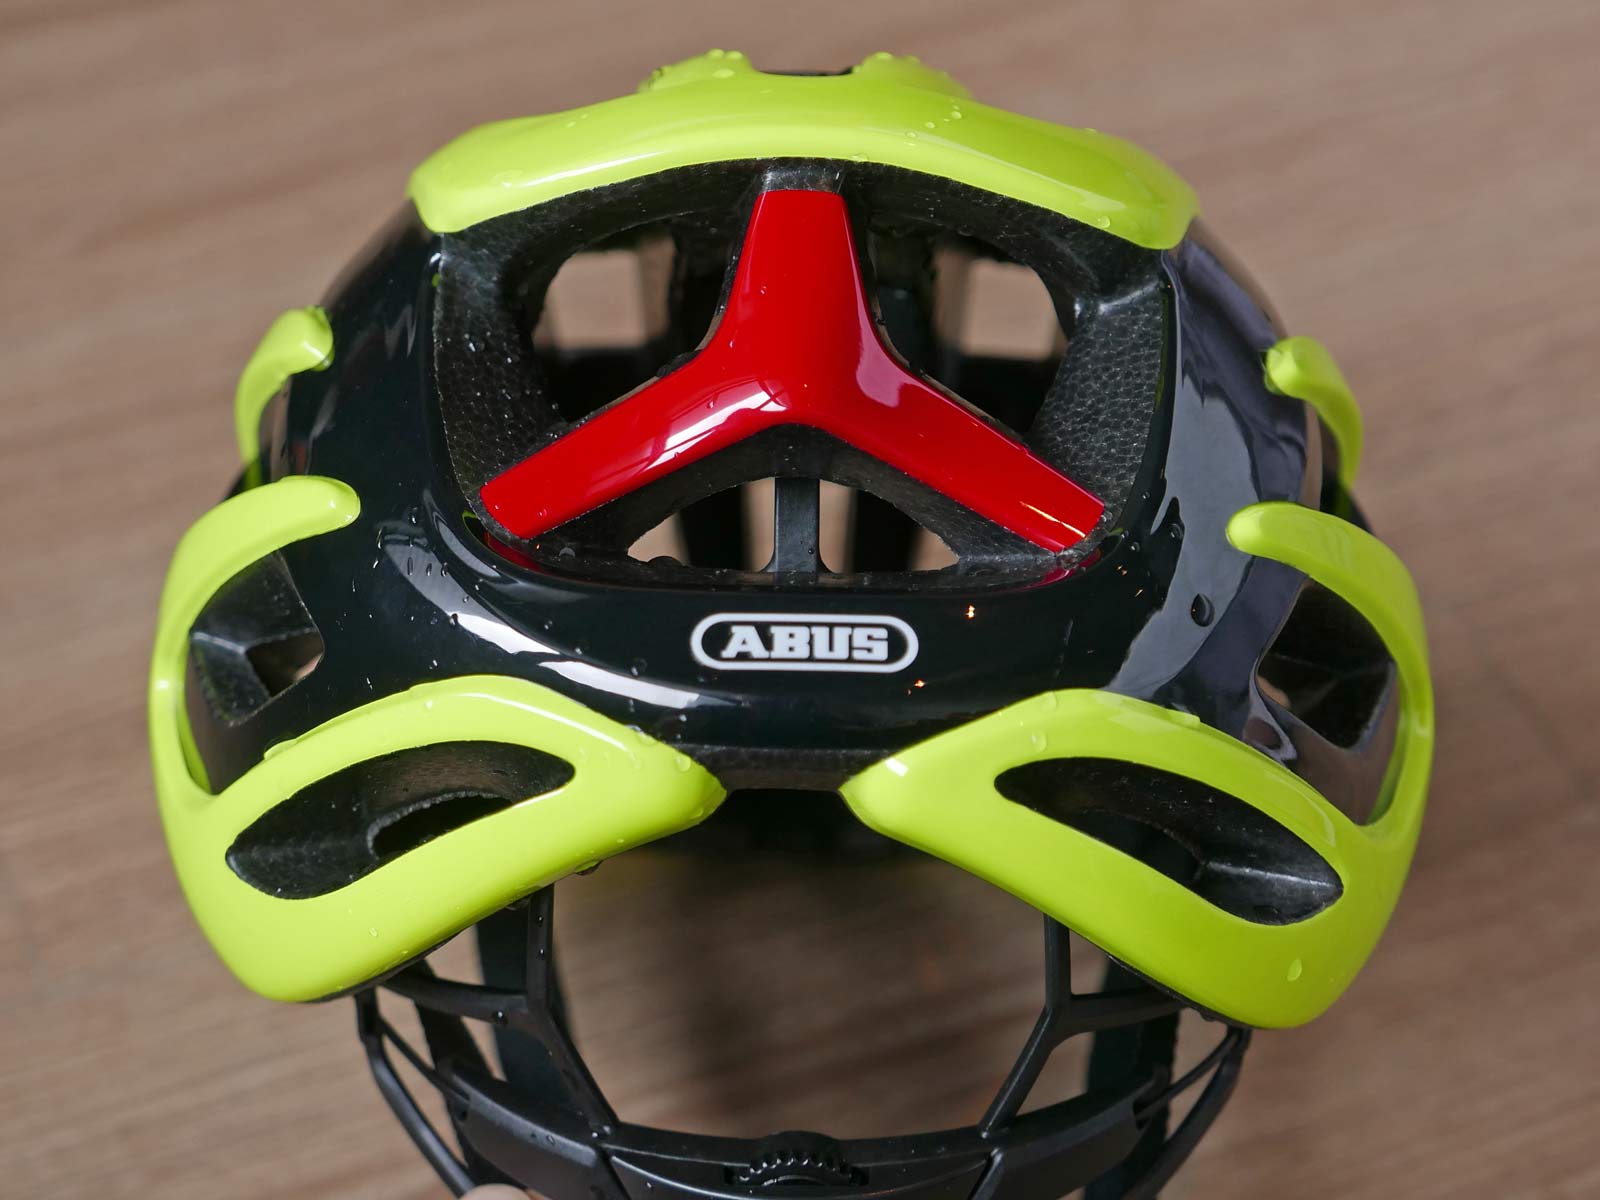 Abus Airbreaker helmet review, lightweight vented aero road bike helmet